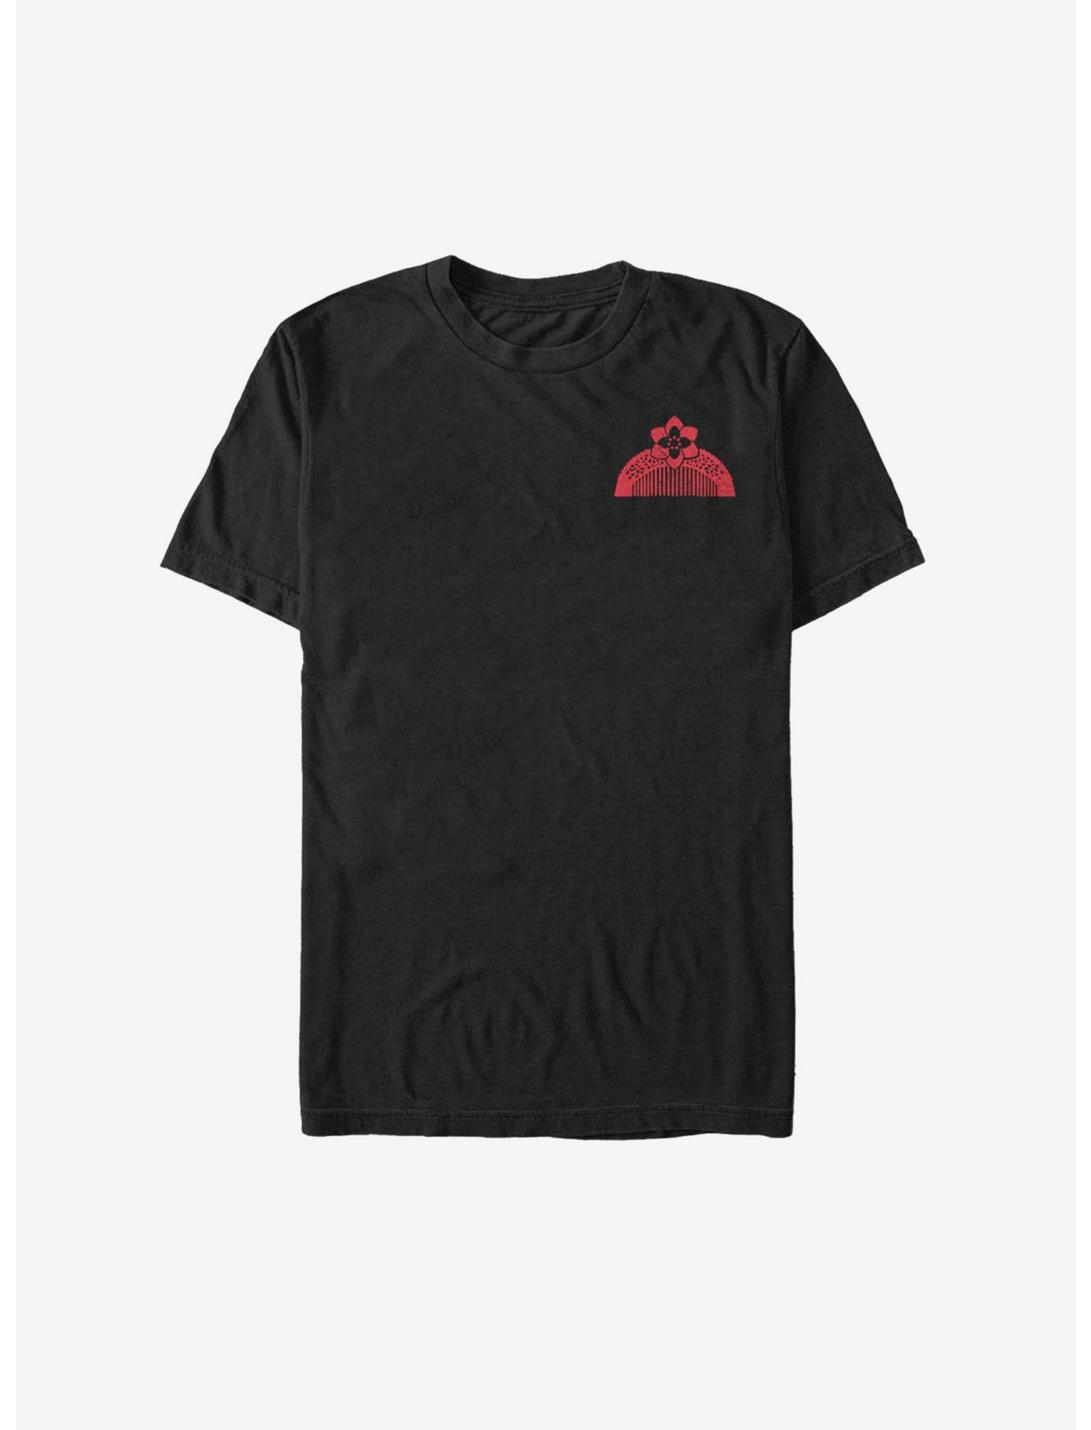 Disney Mulan Live Action Comb T-Shirt, BLACK, hi-res